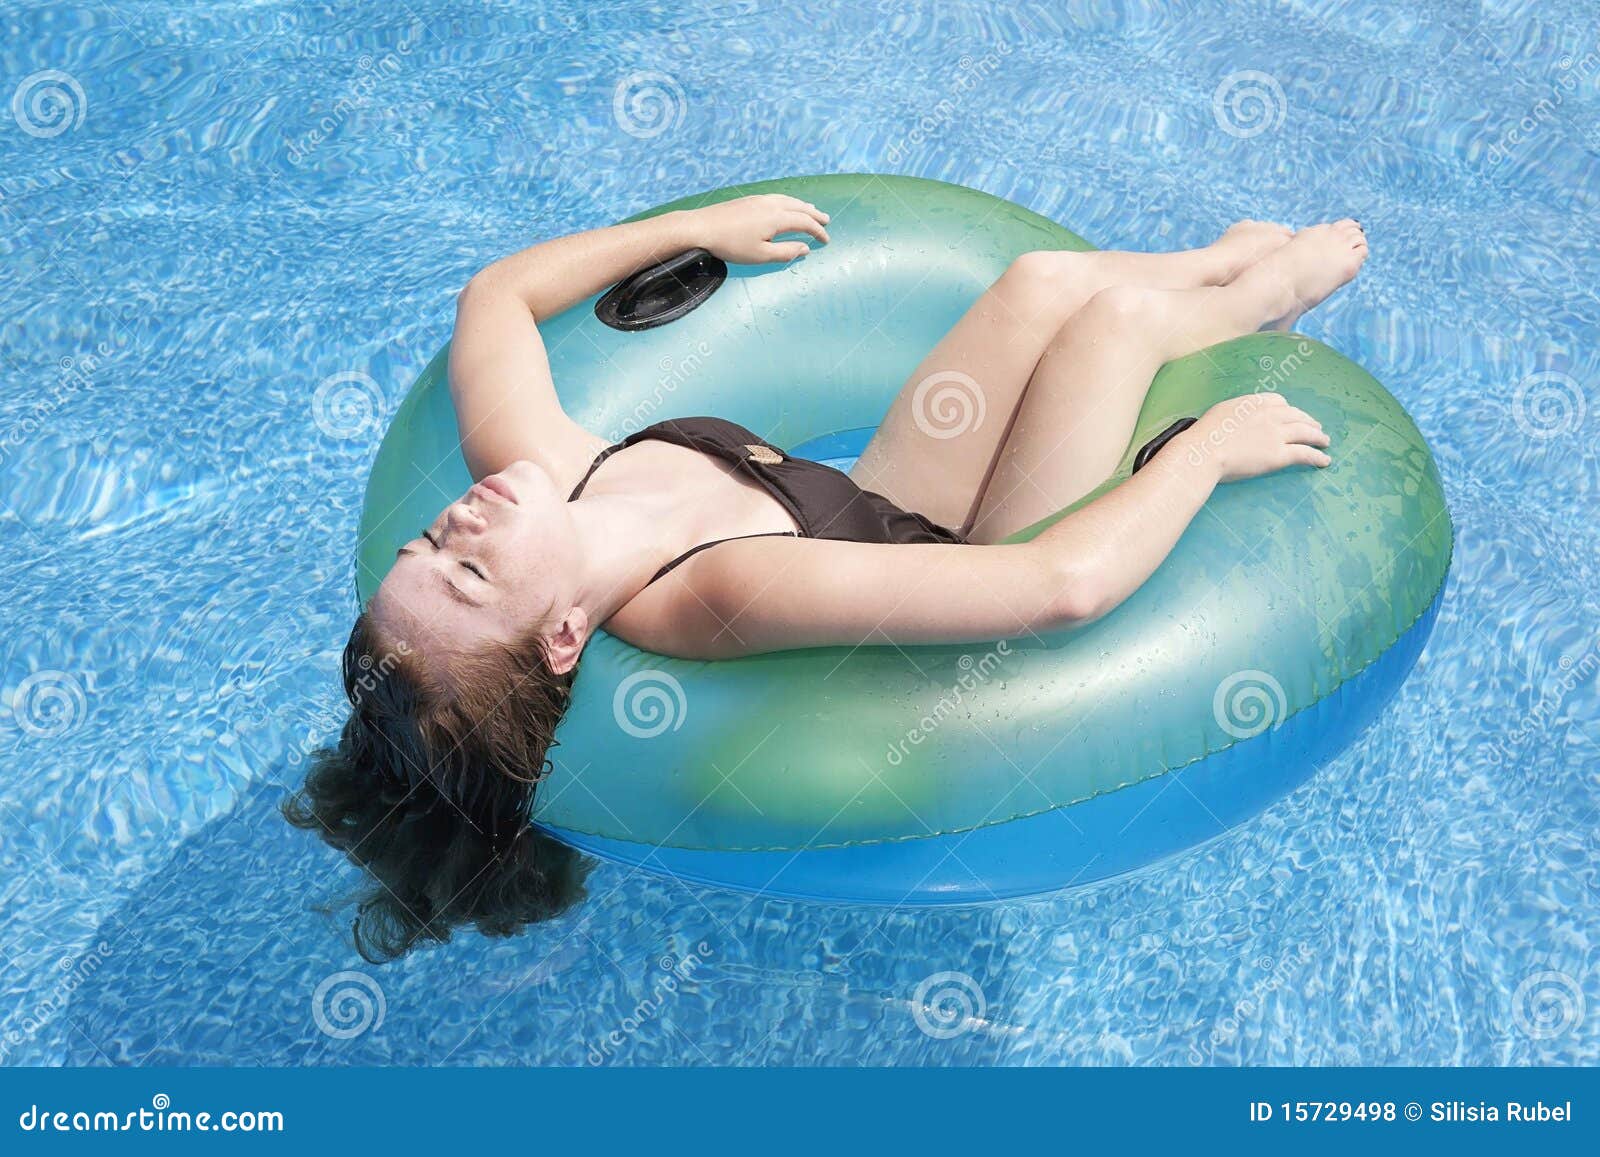 https://thumbs.dreamstime.com/z/teenage-girl-floating-tube-pool-15729498.jpg